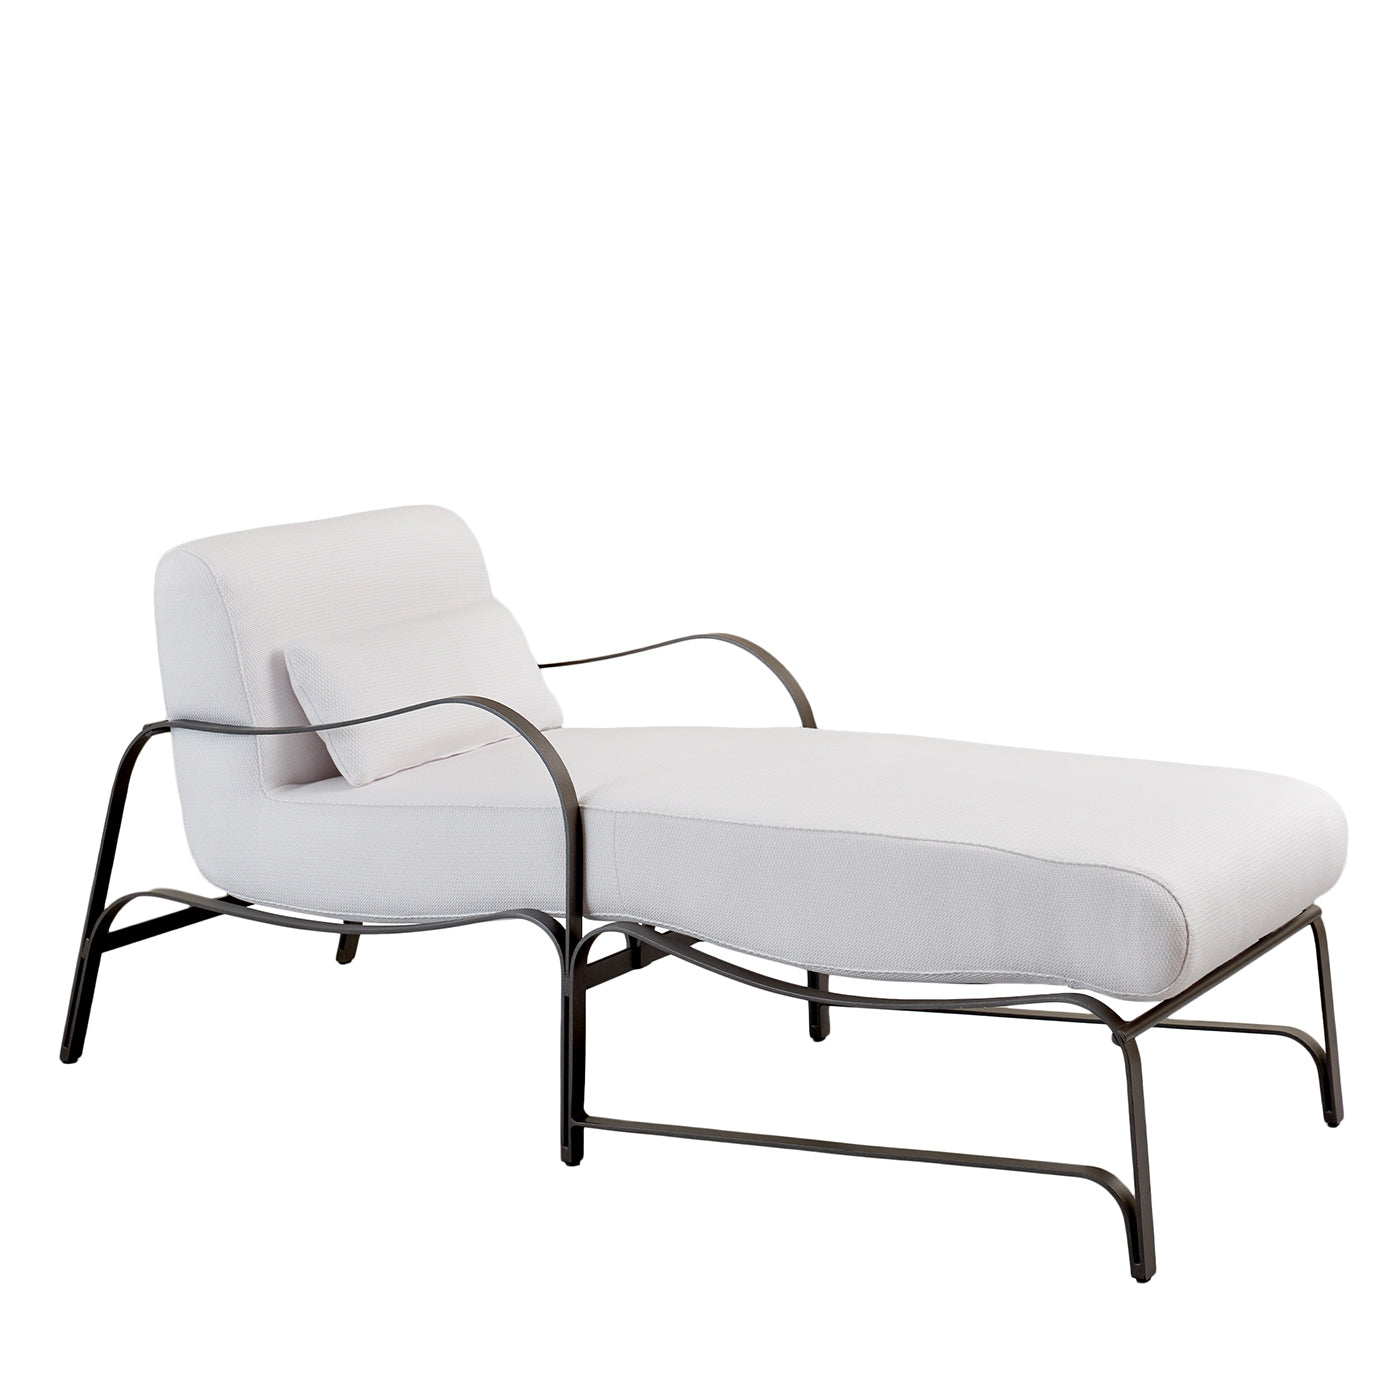 Chaise longue Amalfi blanca y gris de Studio 63 en acero inoxidable - Vista principal